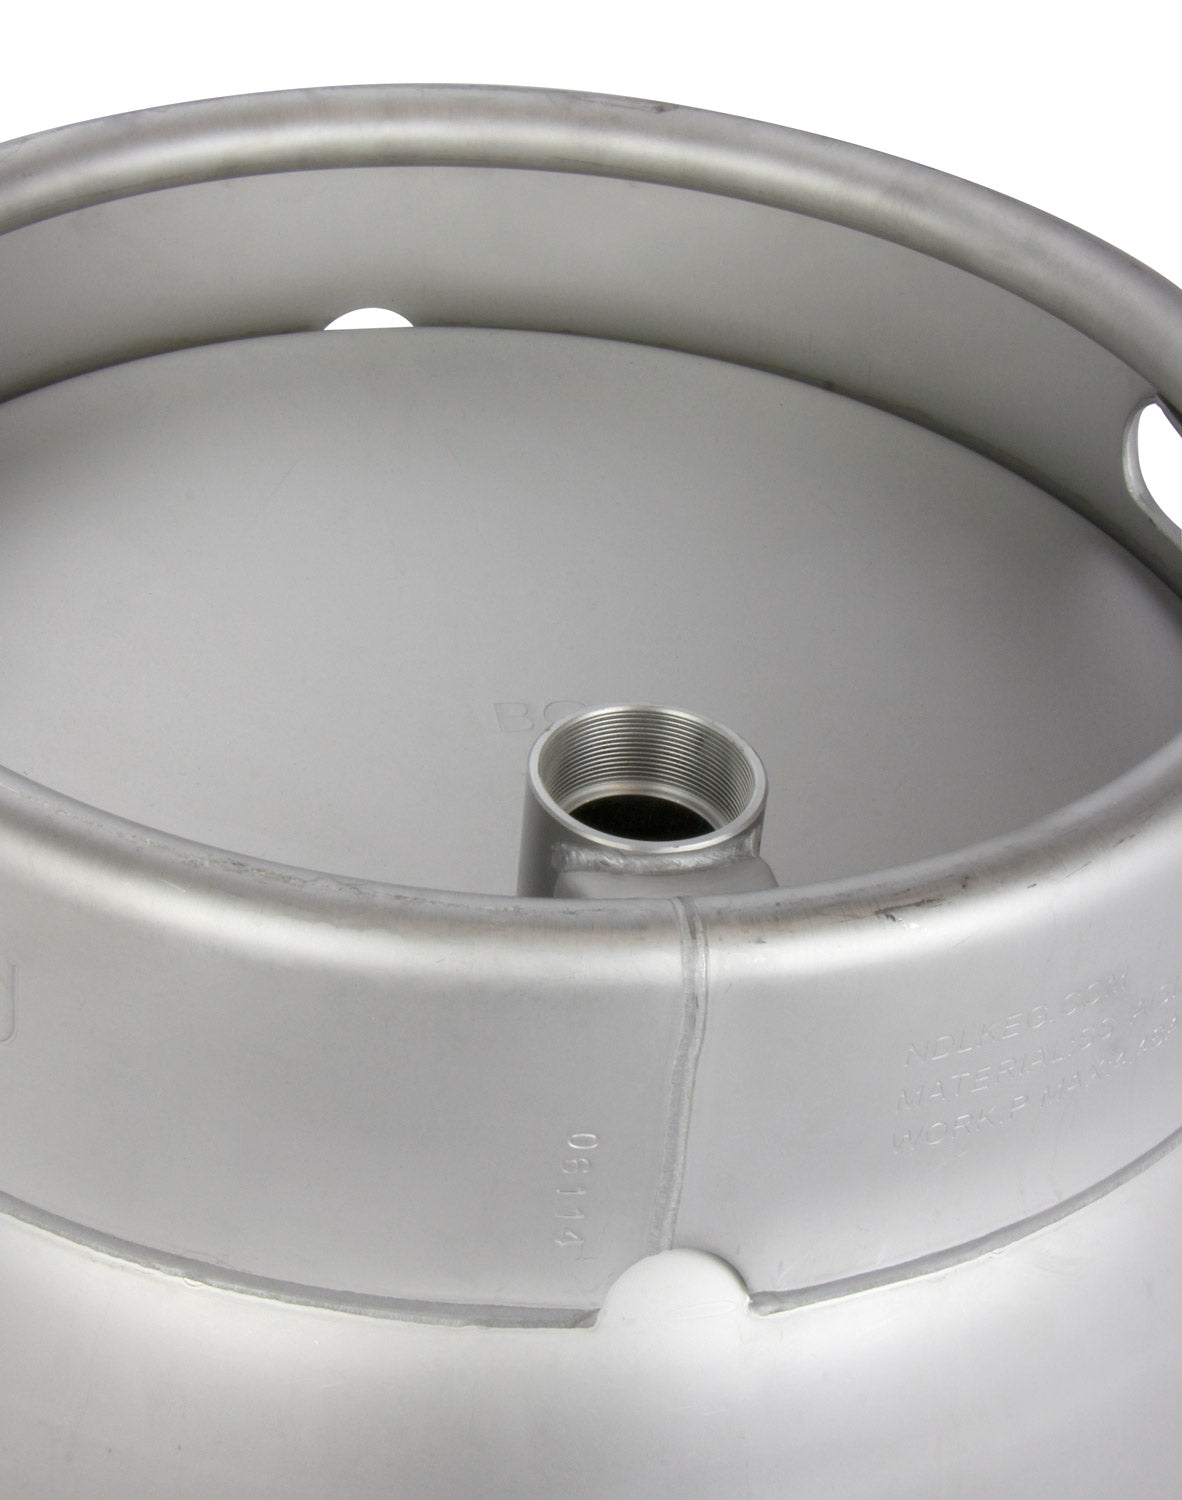 10.8 Gallon Firkin Beer Keg Cask - Used